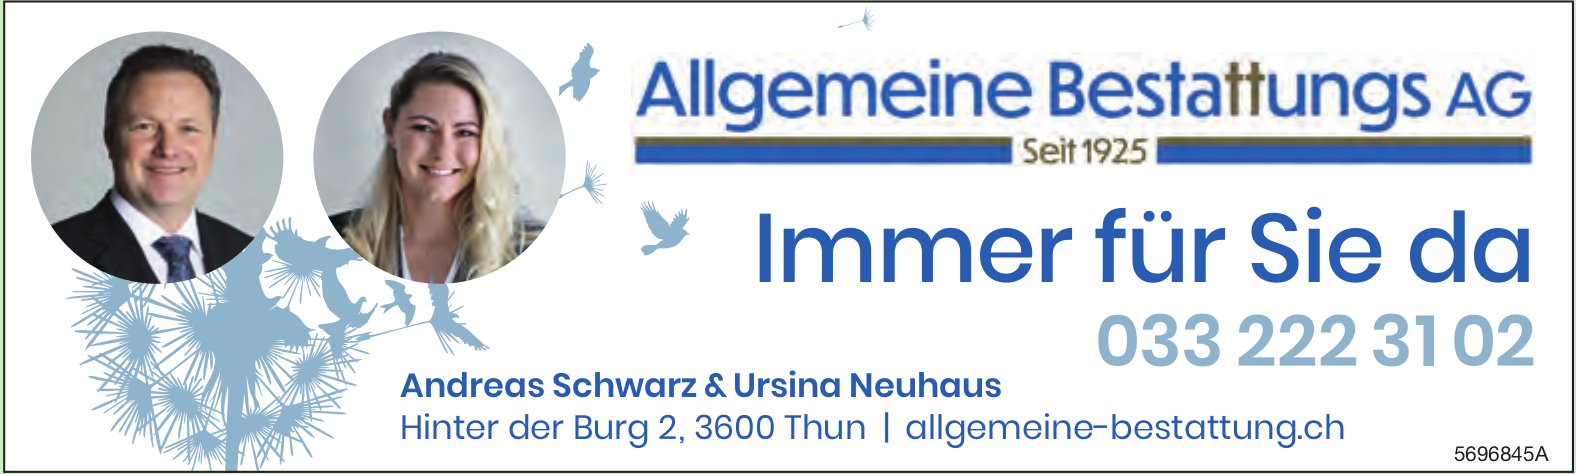 Allgemeine Bestattungs AG, Thun - Immer für Sie da